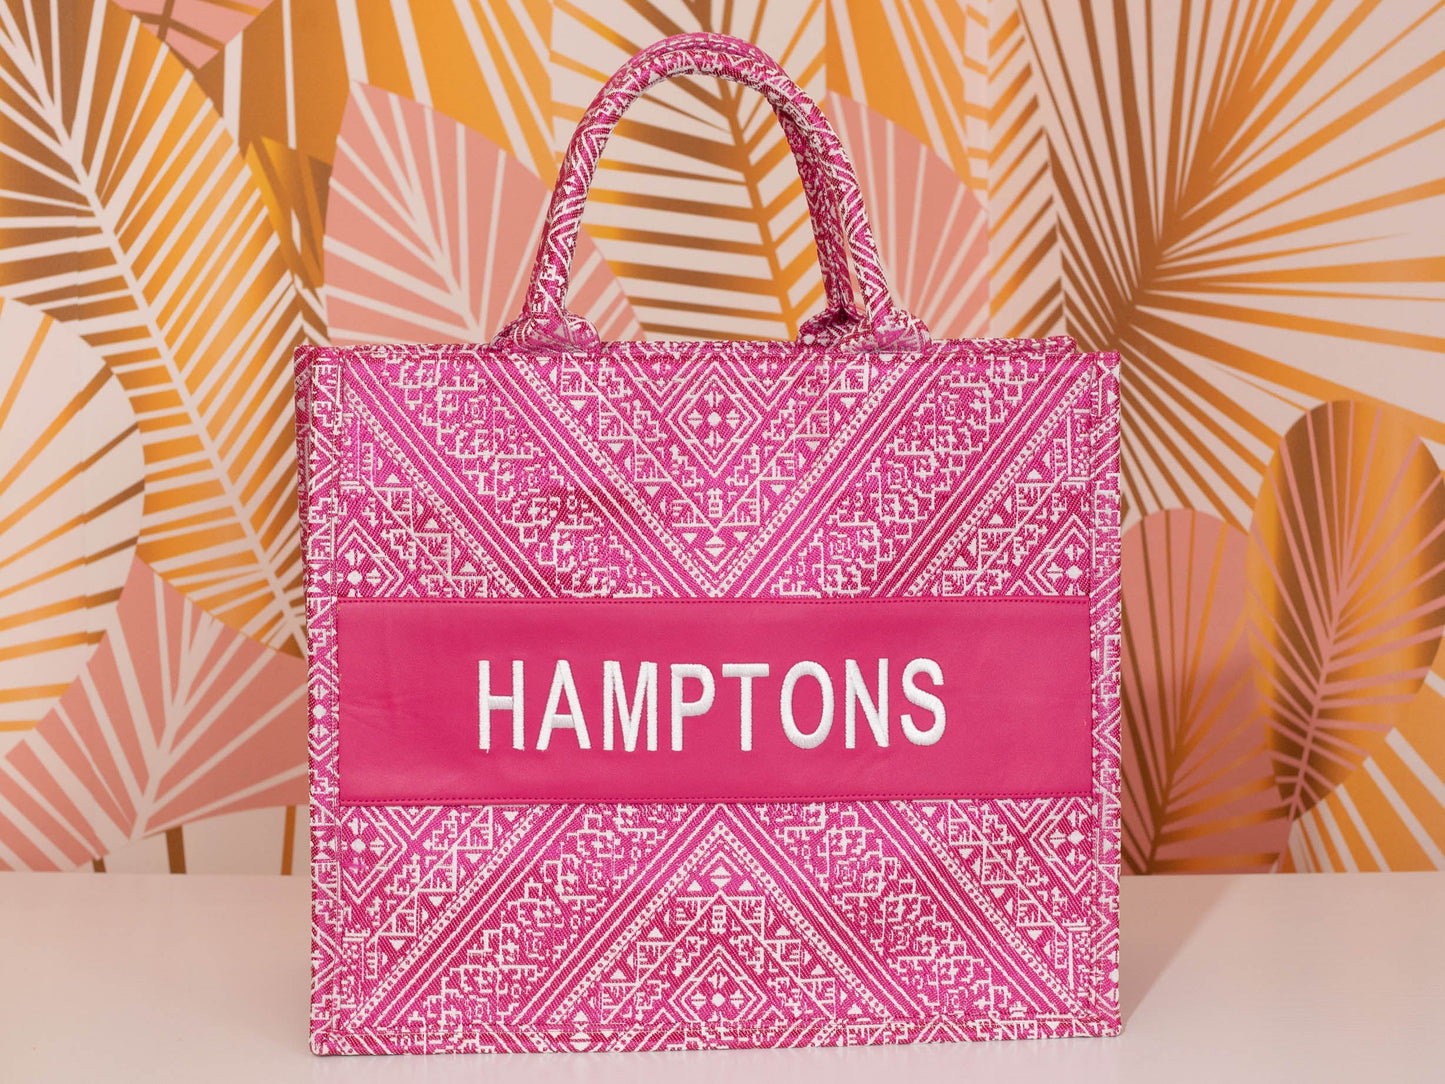 Small Tote CD Hamptons - Premium Bag from Marina St. Barth - Just $100! Shop now at Marina St Barth